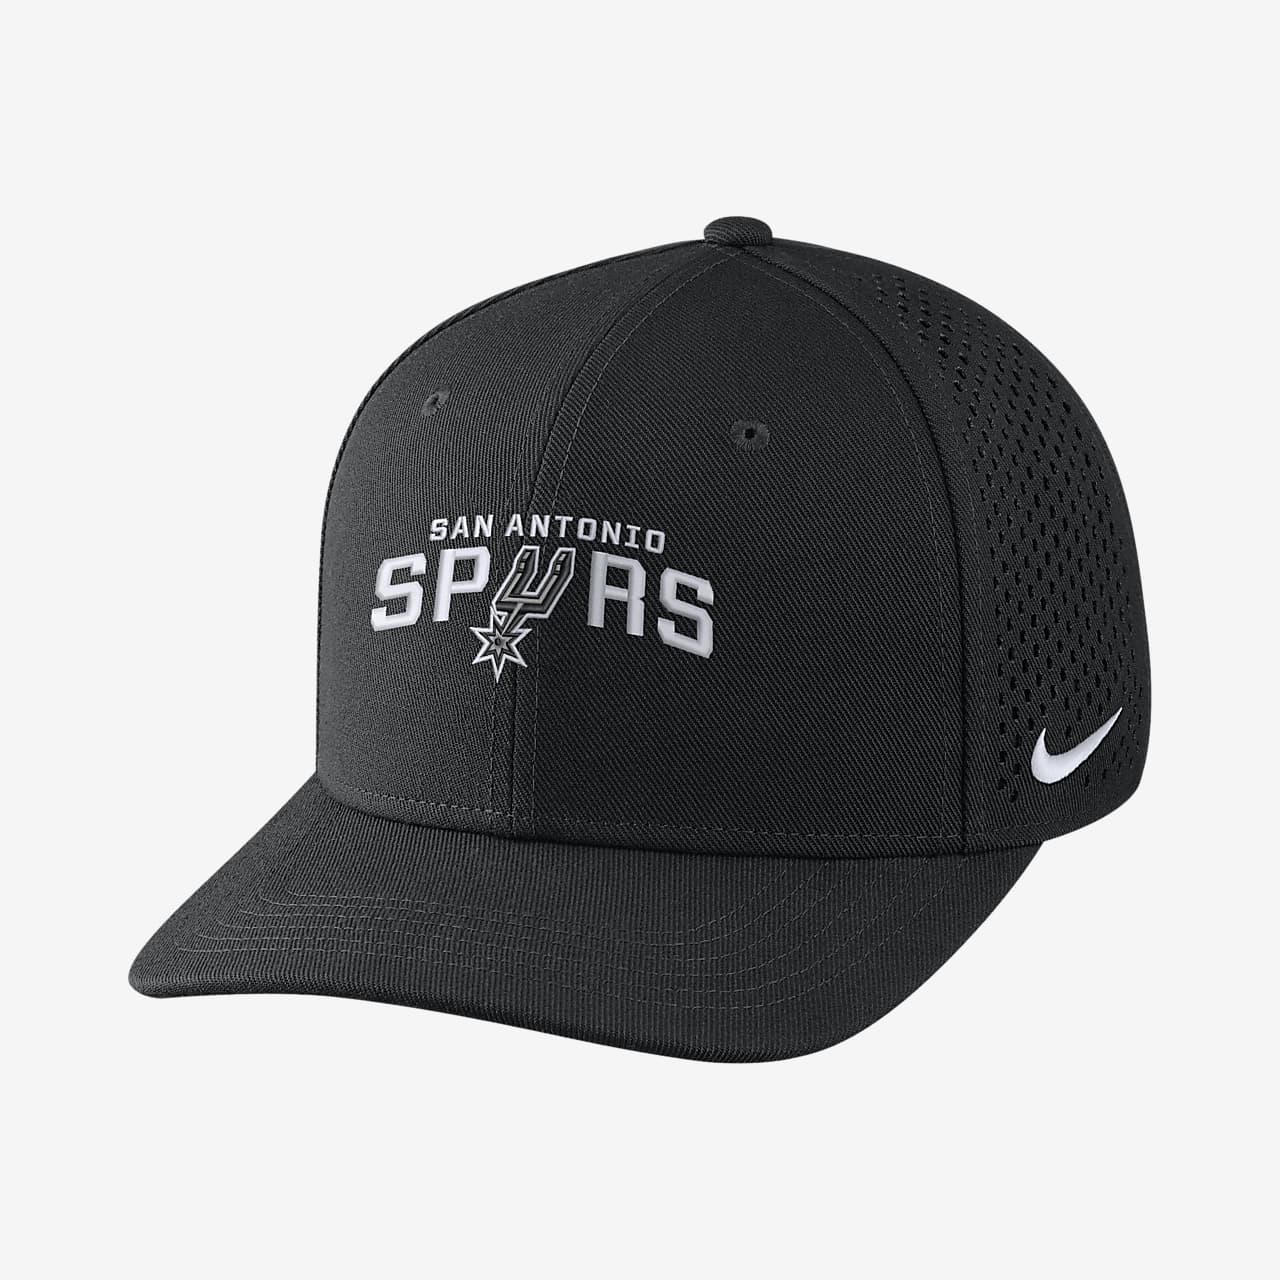 San Antonio Spurs Nike AeroBill Classic99 Unisex Adjustable NBA Hat